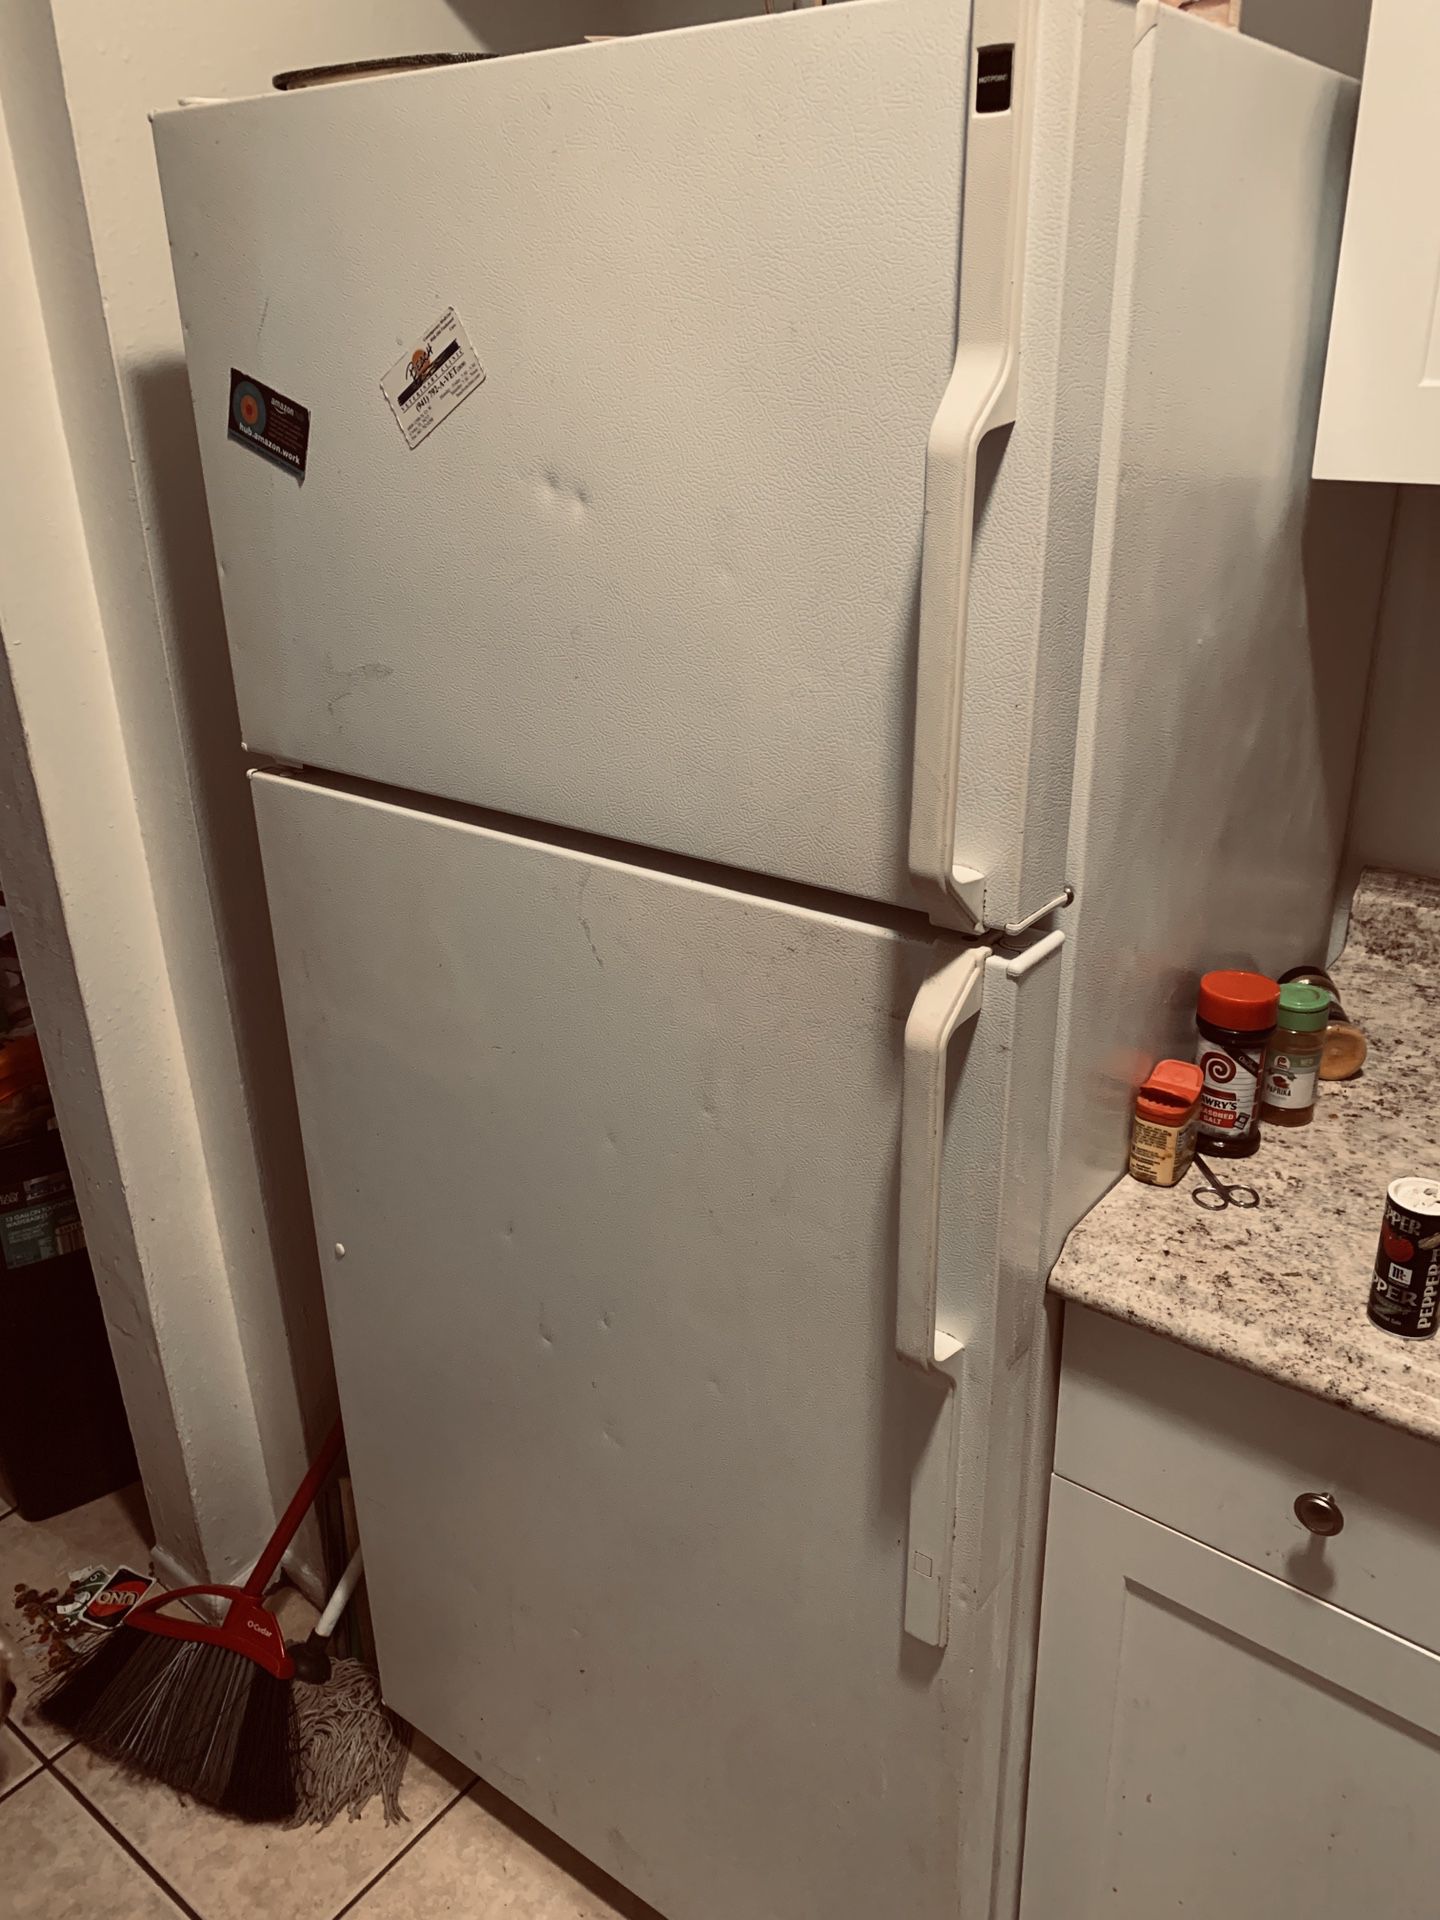 Refrigerator used